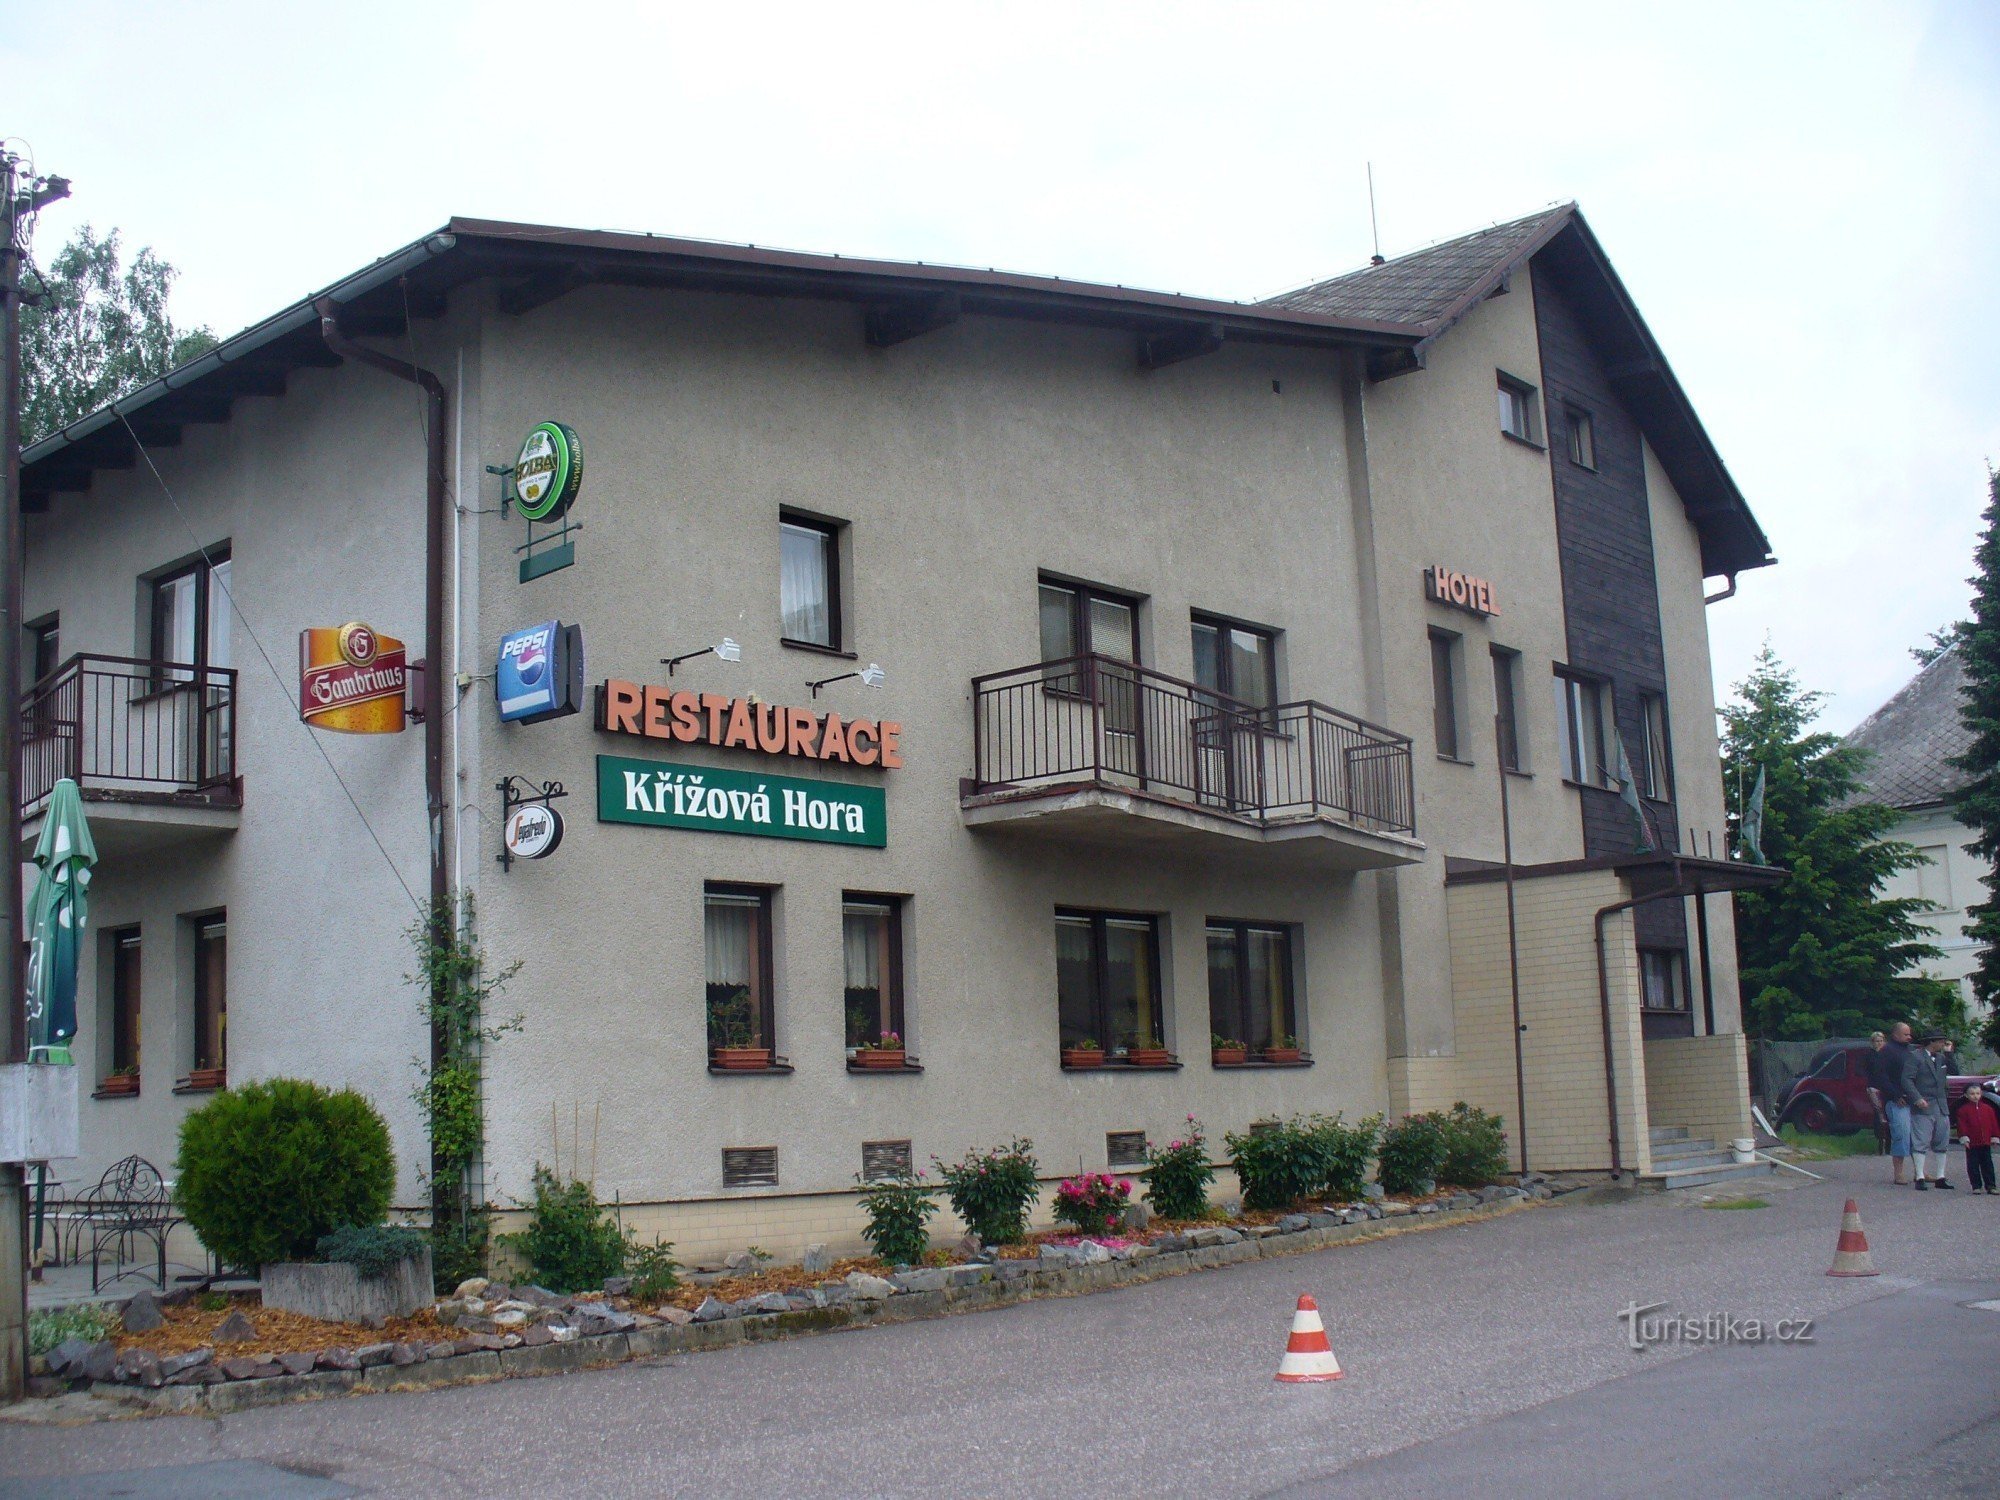 Restaurant Křížová hora in Červená Voda